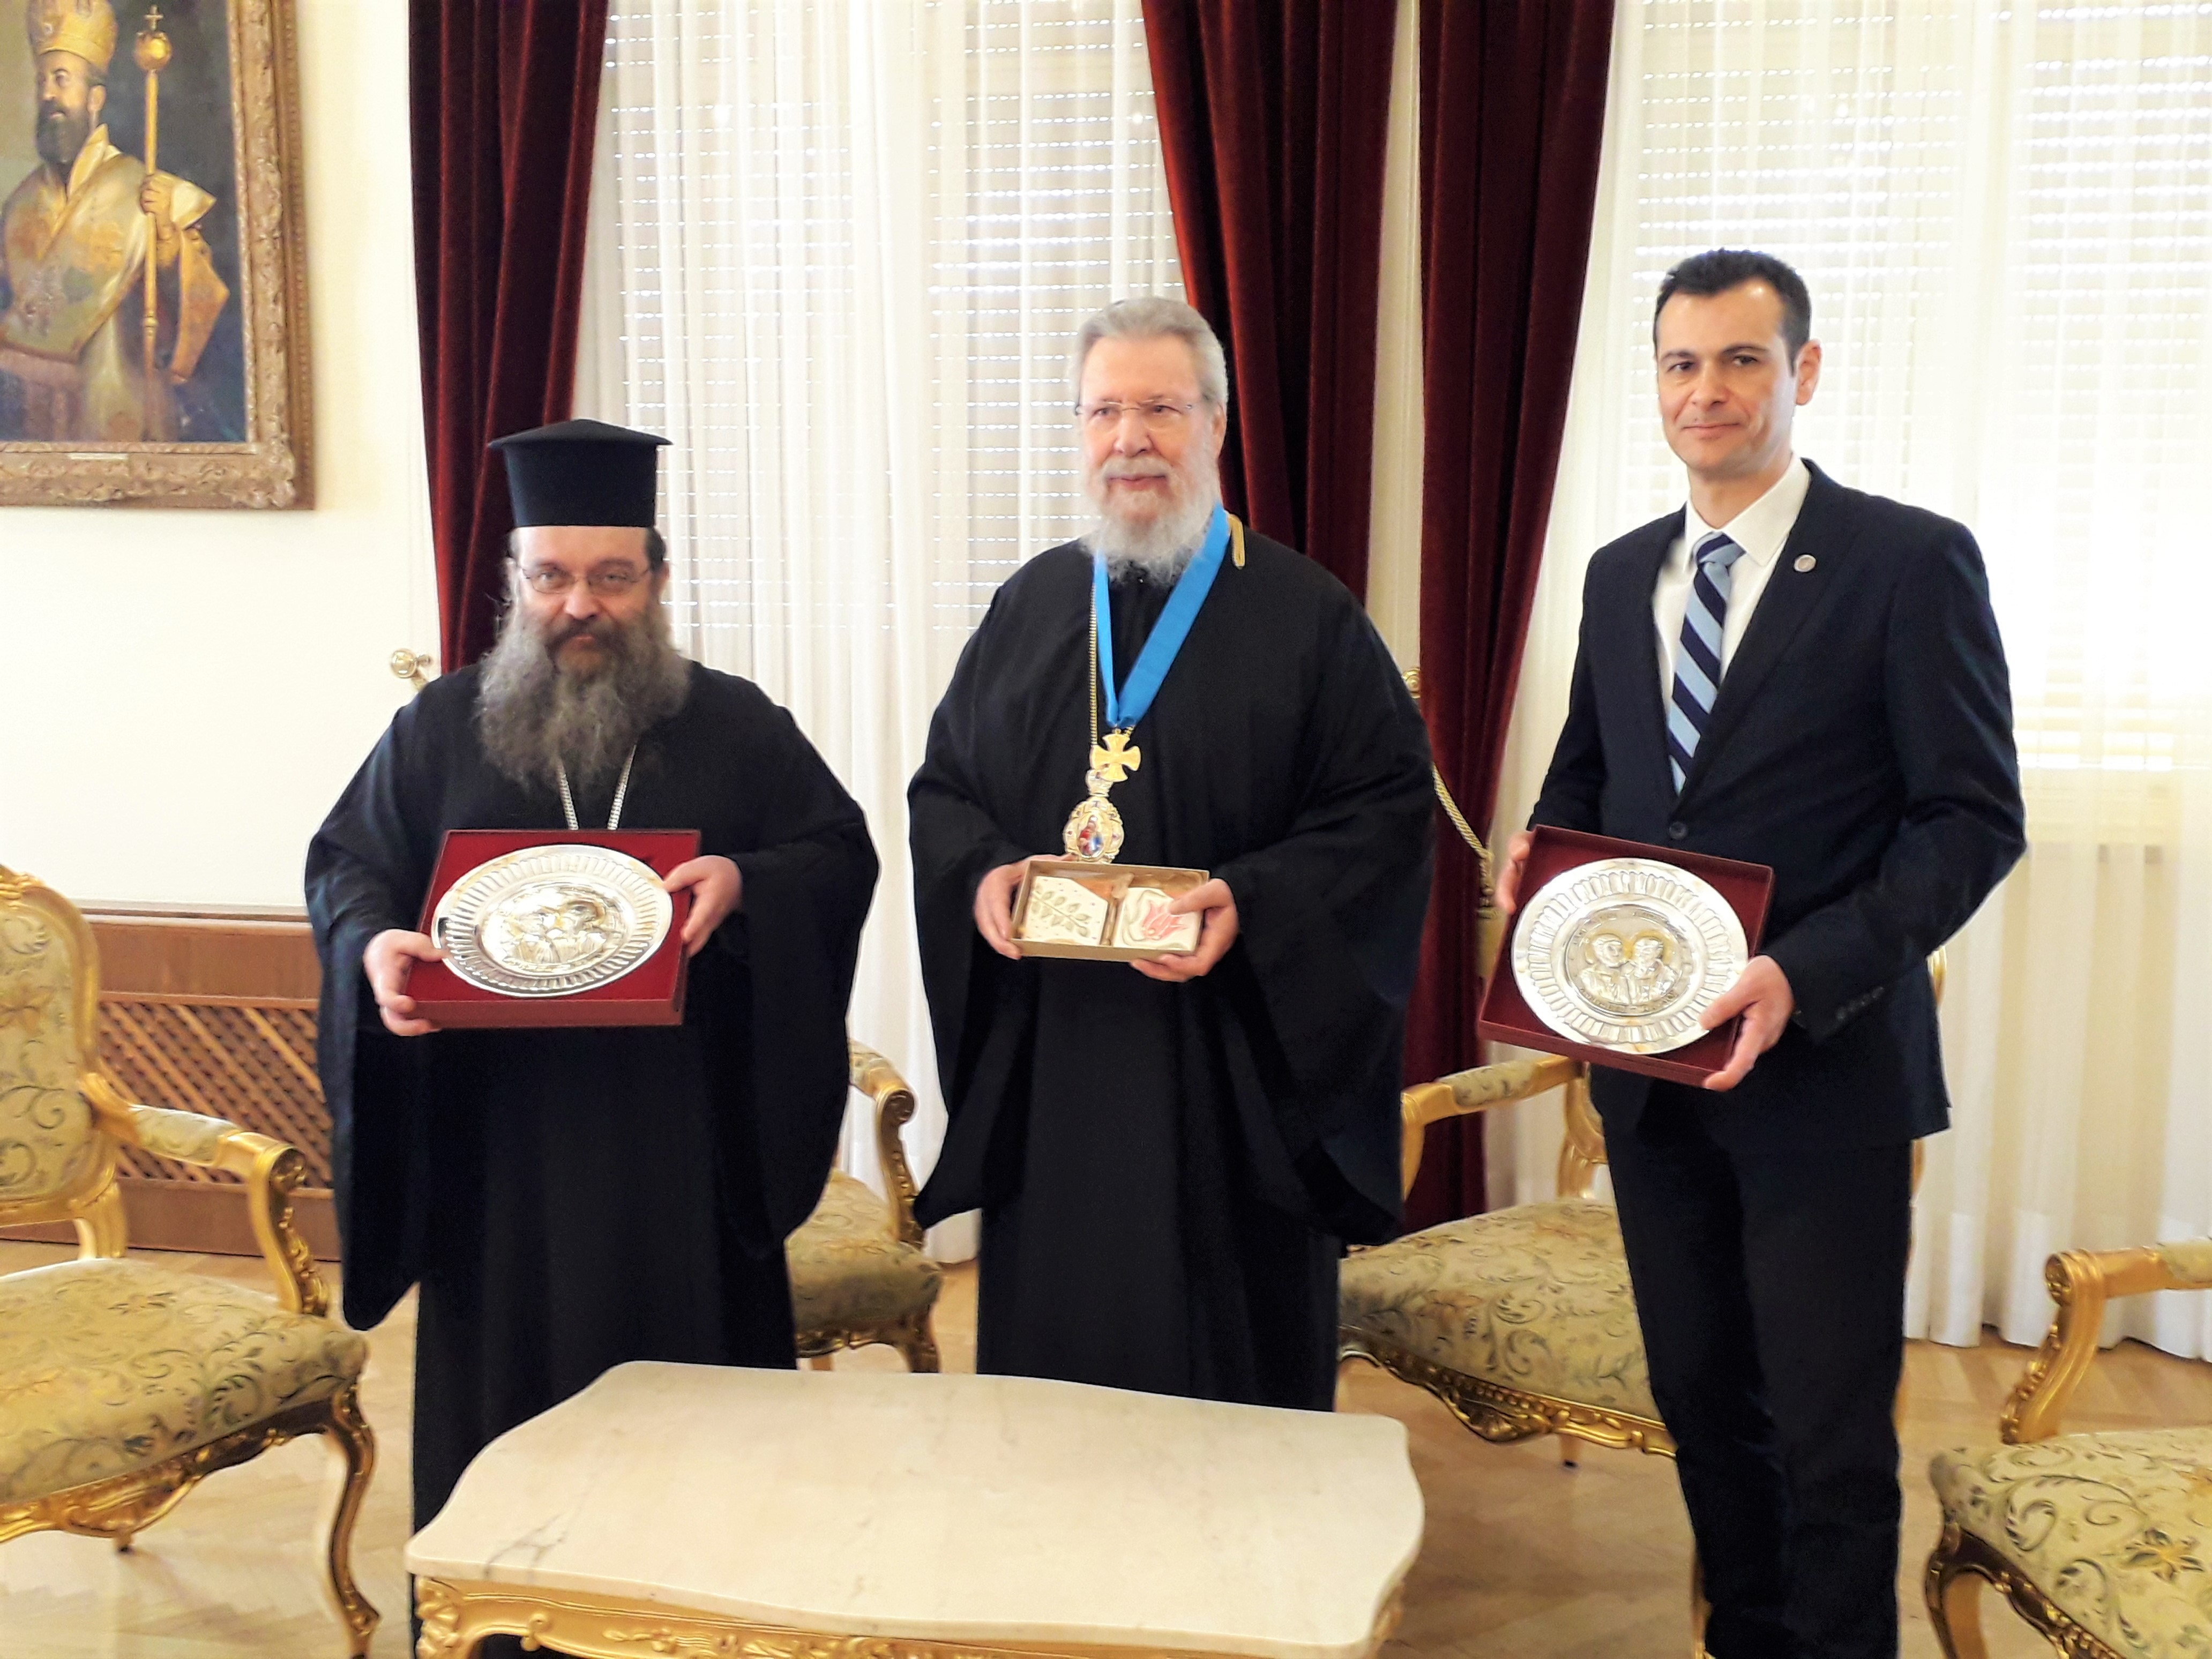 Ο Αρχιεπίσκοπος Κύπρου βραβεύεται από την Ιερά Μητρόπολη Χίου